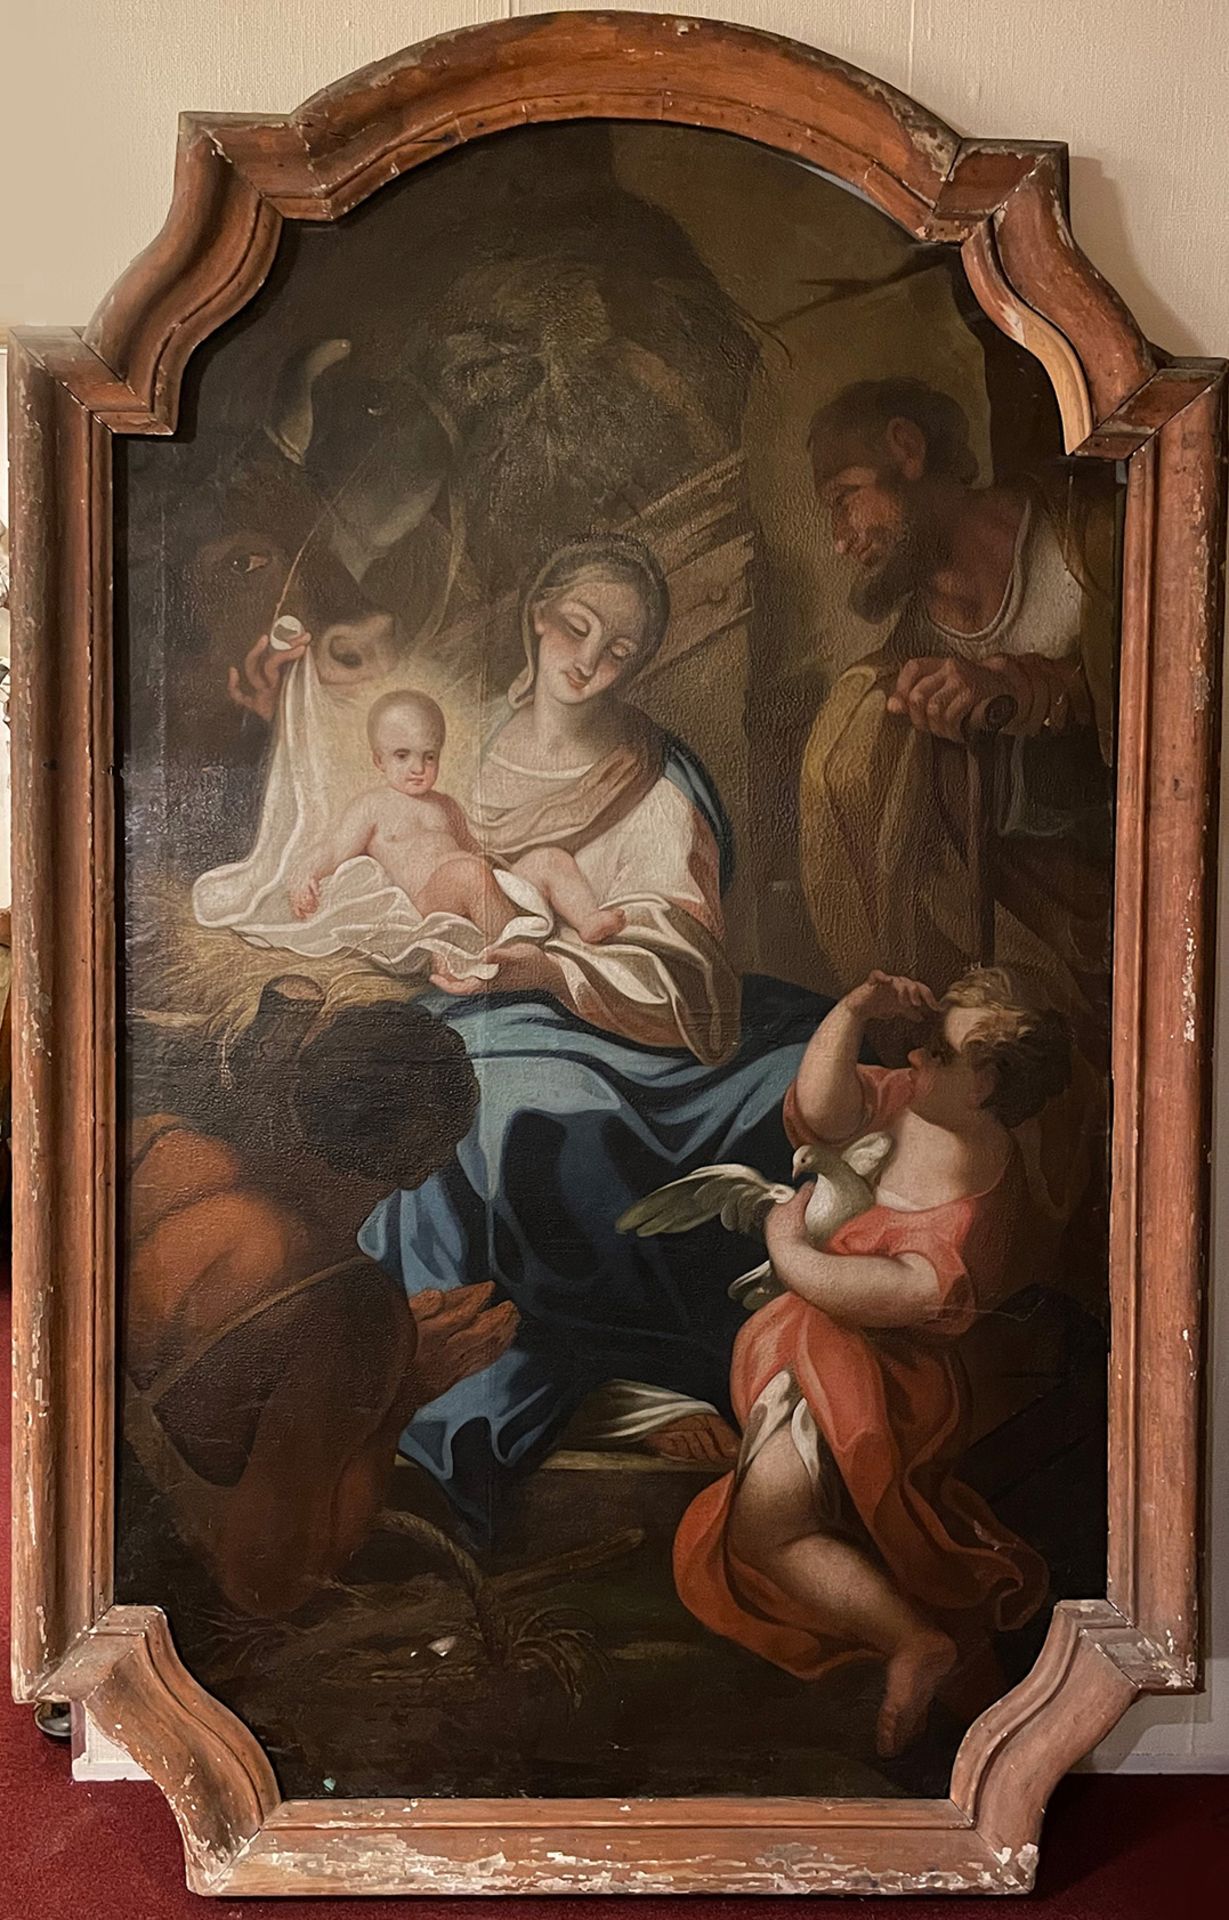 Fränkischer Künstler, 18. Jh., Geburt Jesu mit der Anbetung der Hirten, großes Altarblatt. Maria